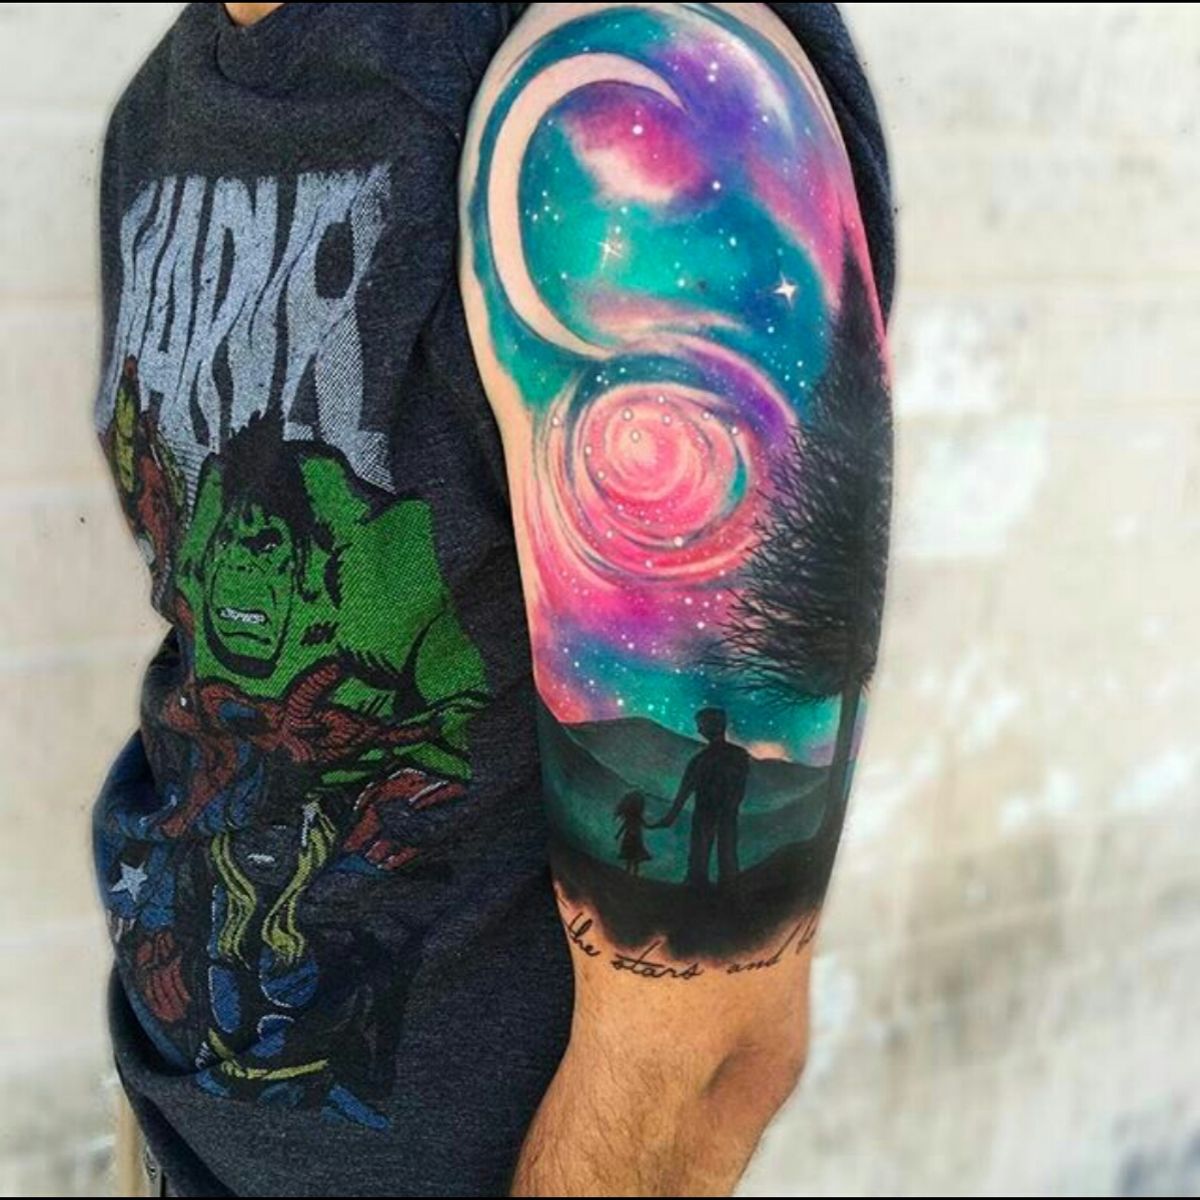 sky tattoo sleeve